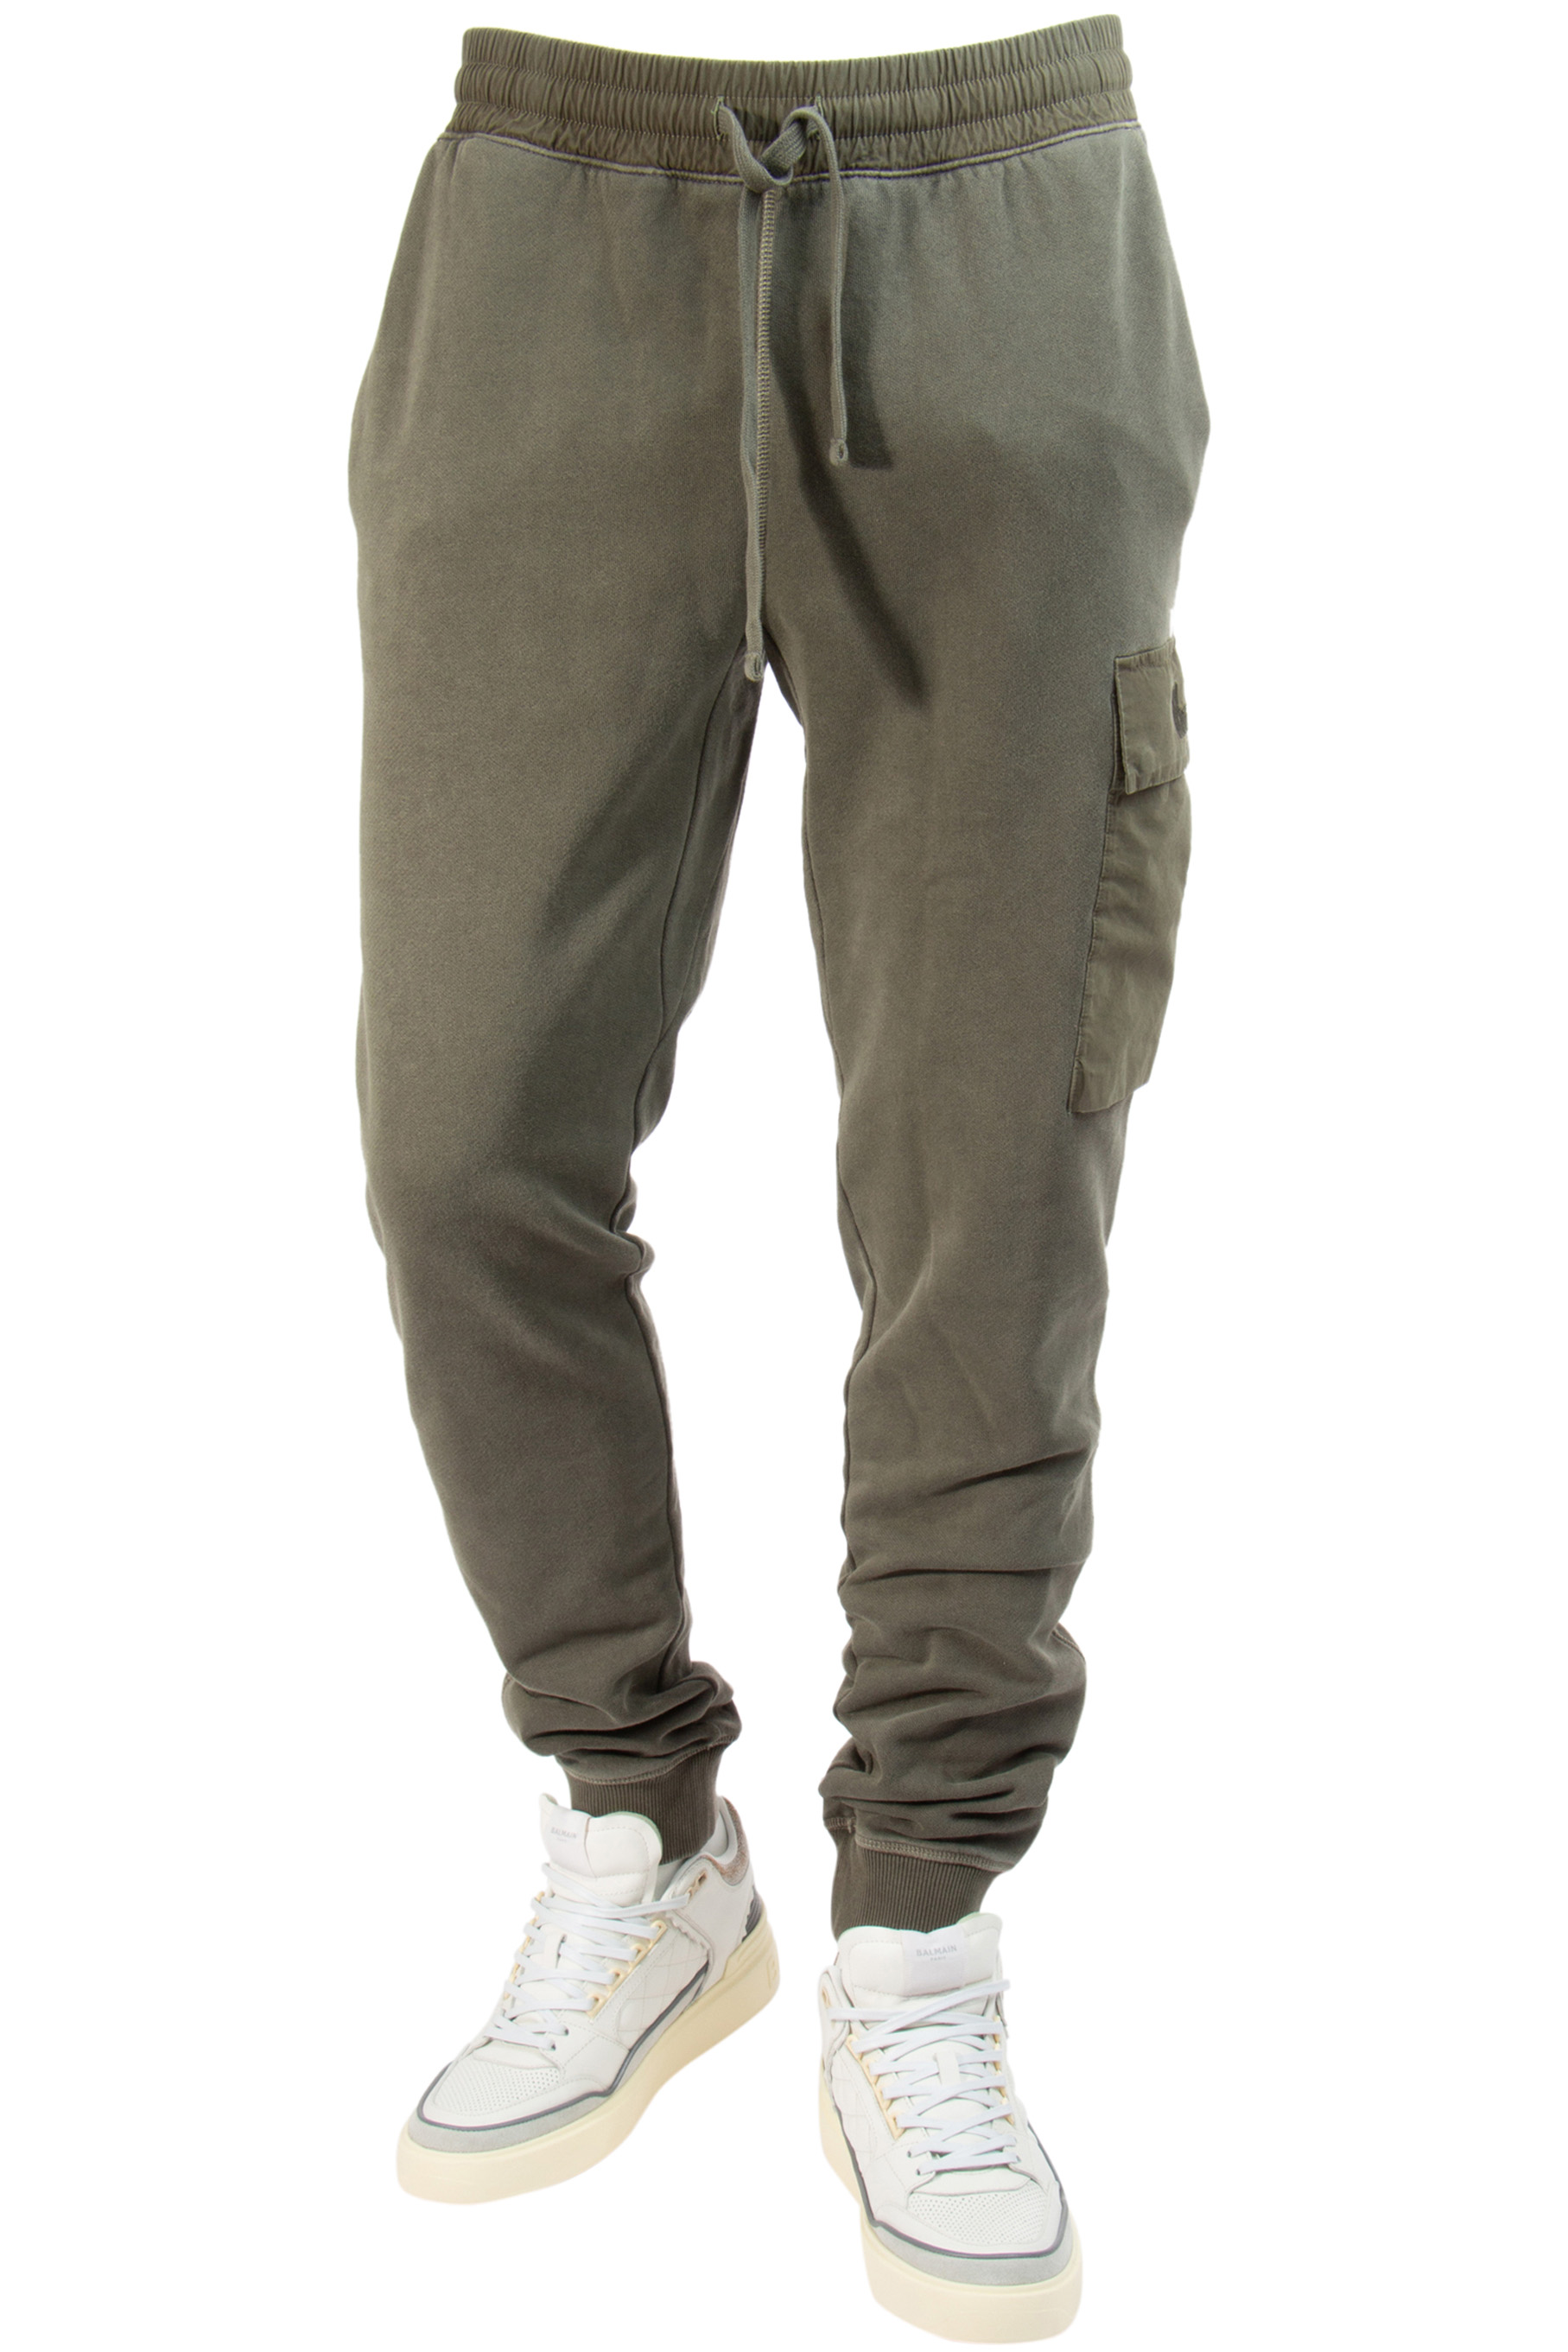 WOOLRICH Cotton Cargo Pants | Pants | Jeans & Pants | Clothing | Men ...